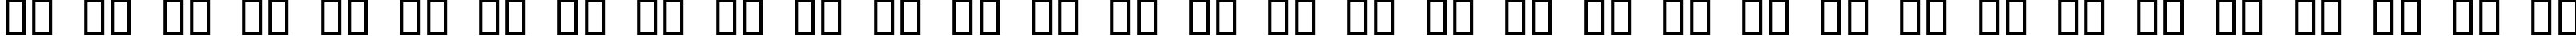 Пример написания русского алфавита шрифтом Criminal Italic